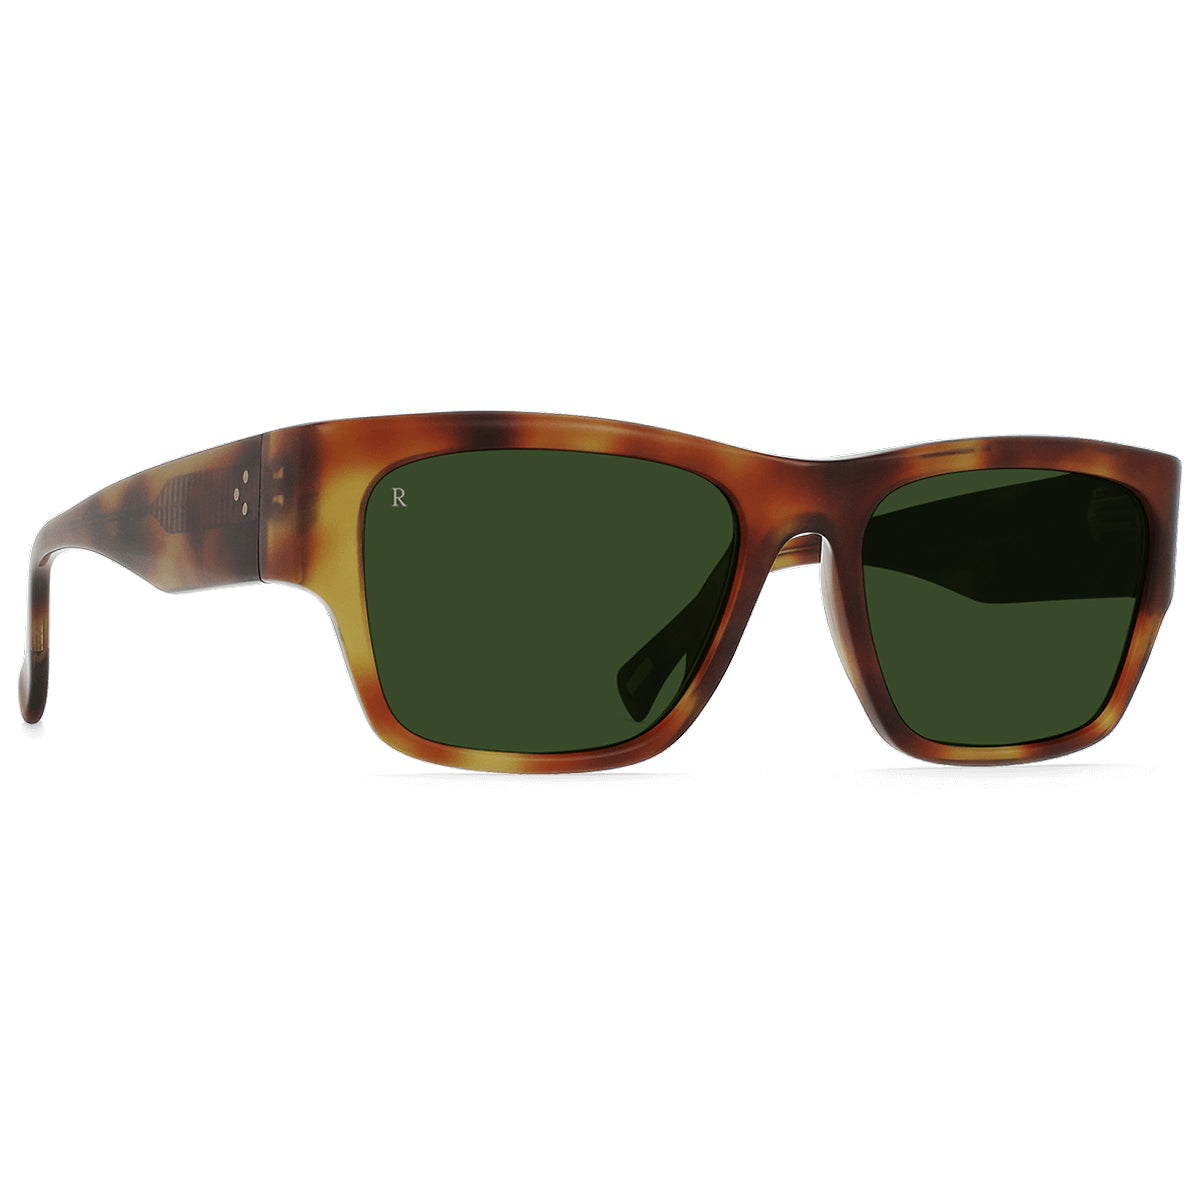 Raen Rufio Sunglasses - Split Finish Moab Tortoise/Bottle Green - 55